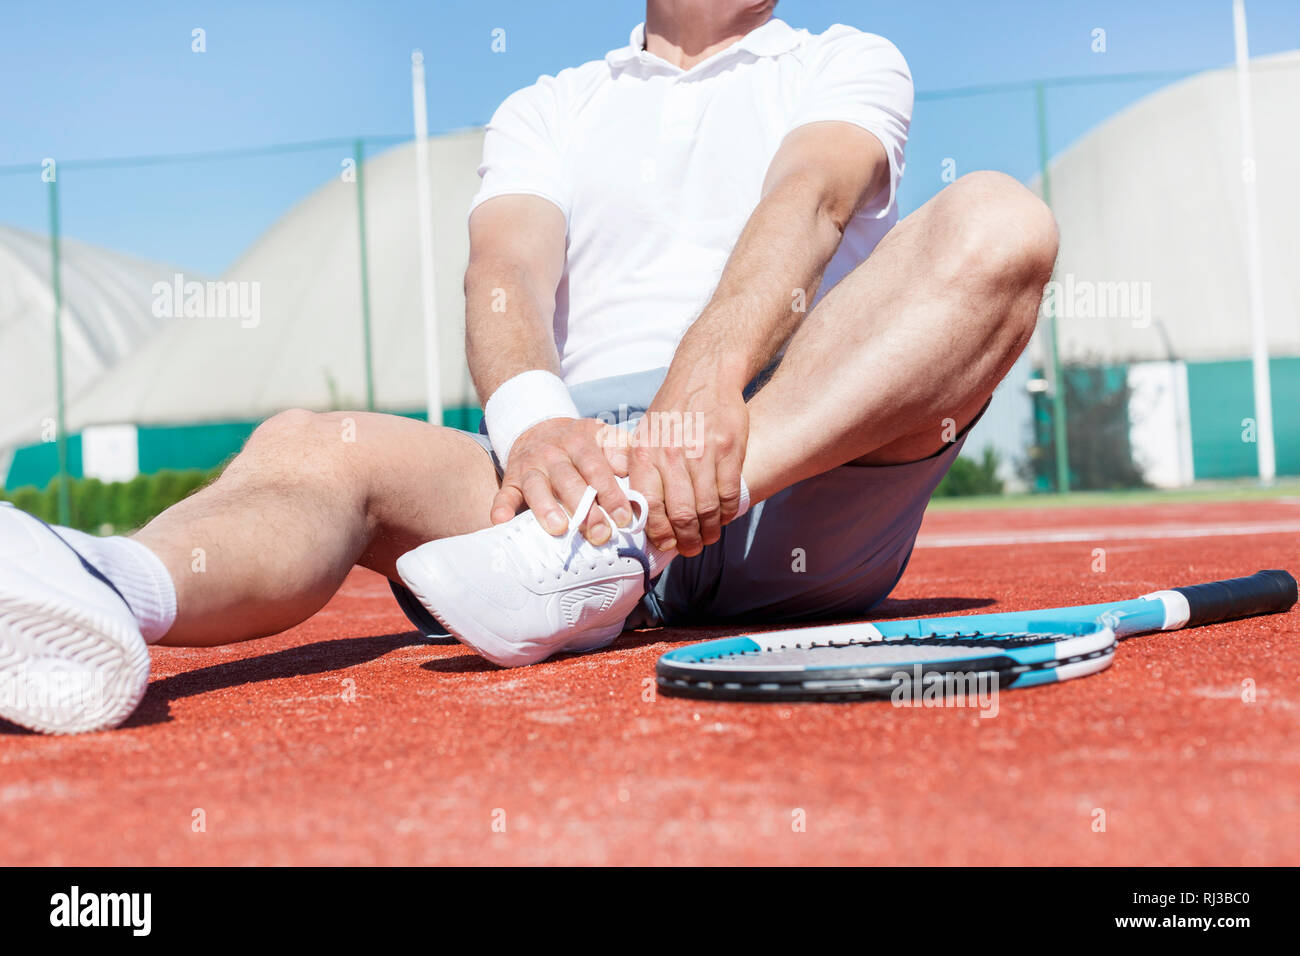 La section basse de l'homme mûr qui s'étend de la jambe en position assise sur le rouge de tennis en été Banque D'Images